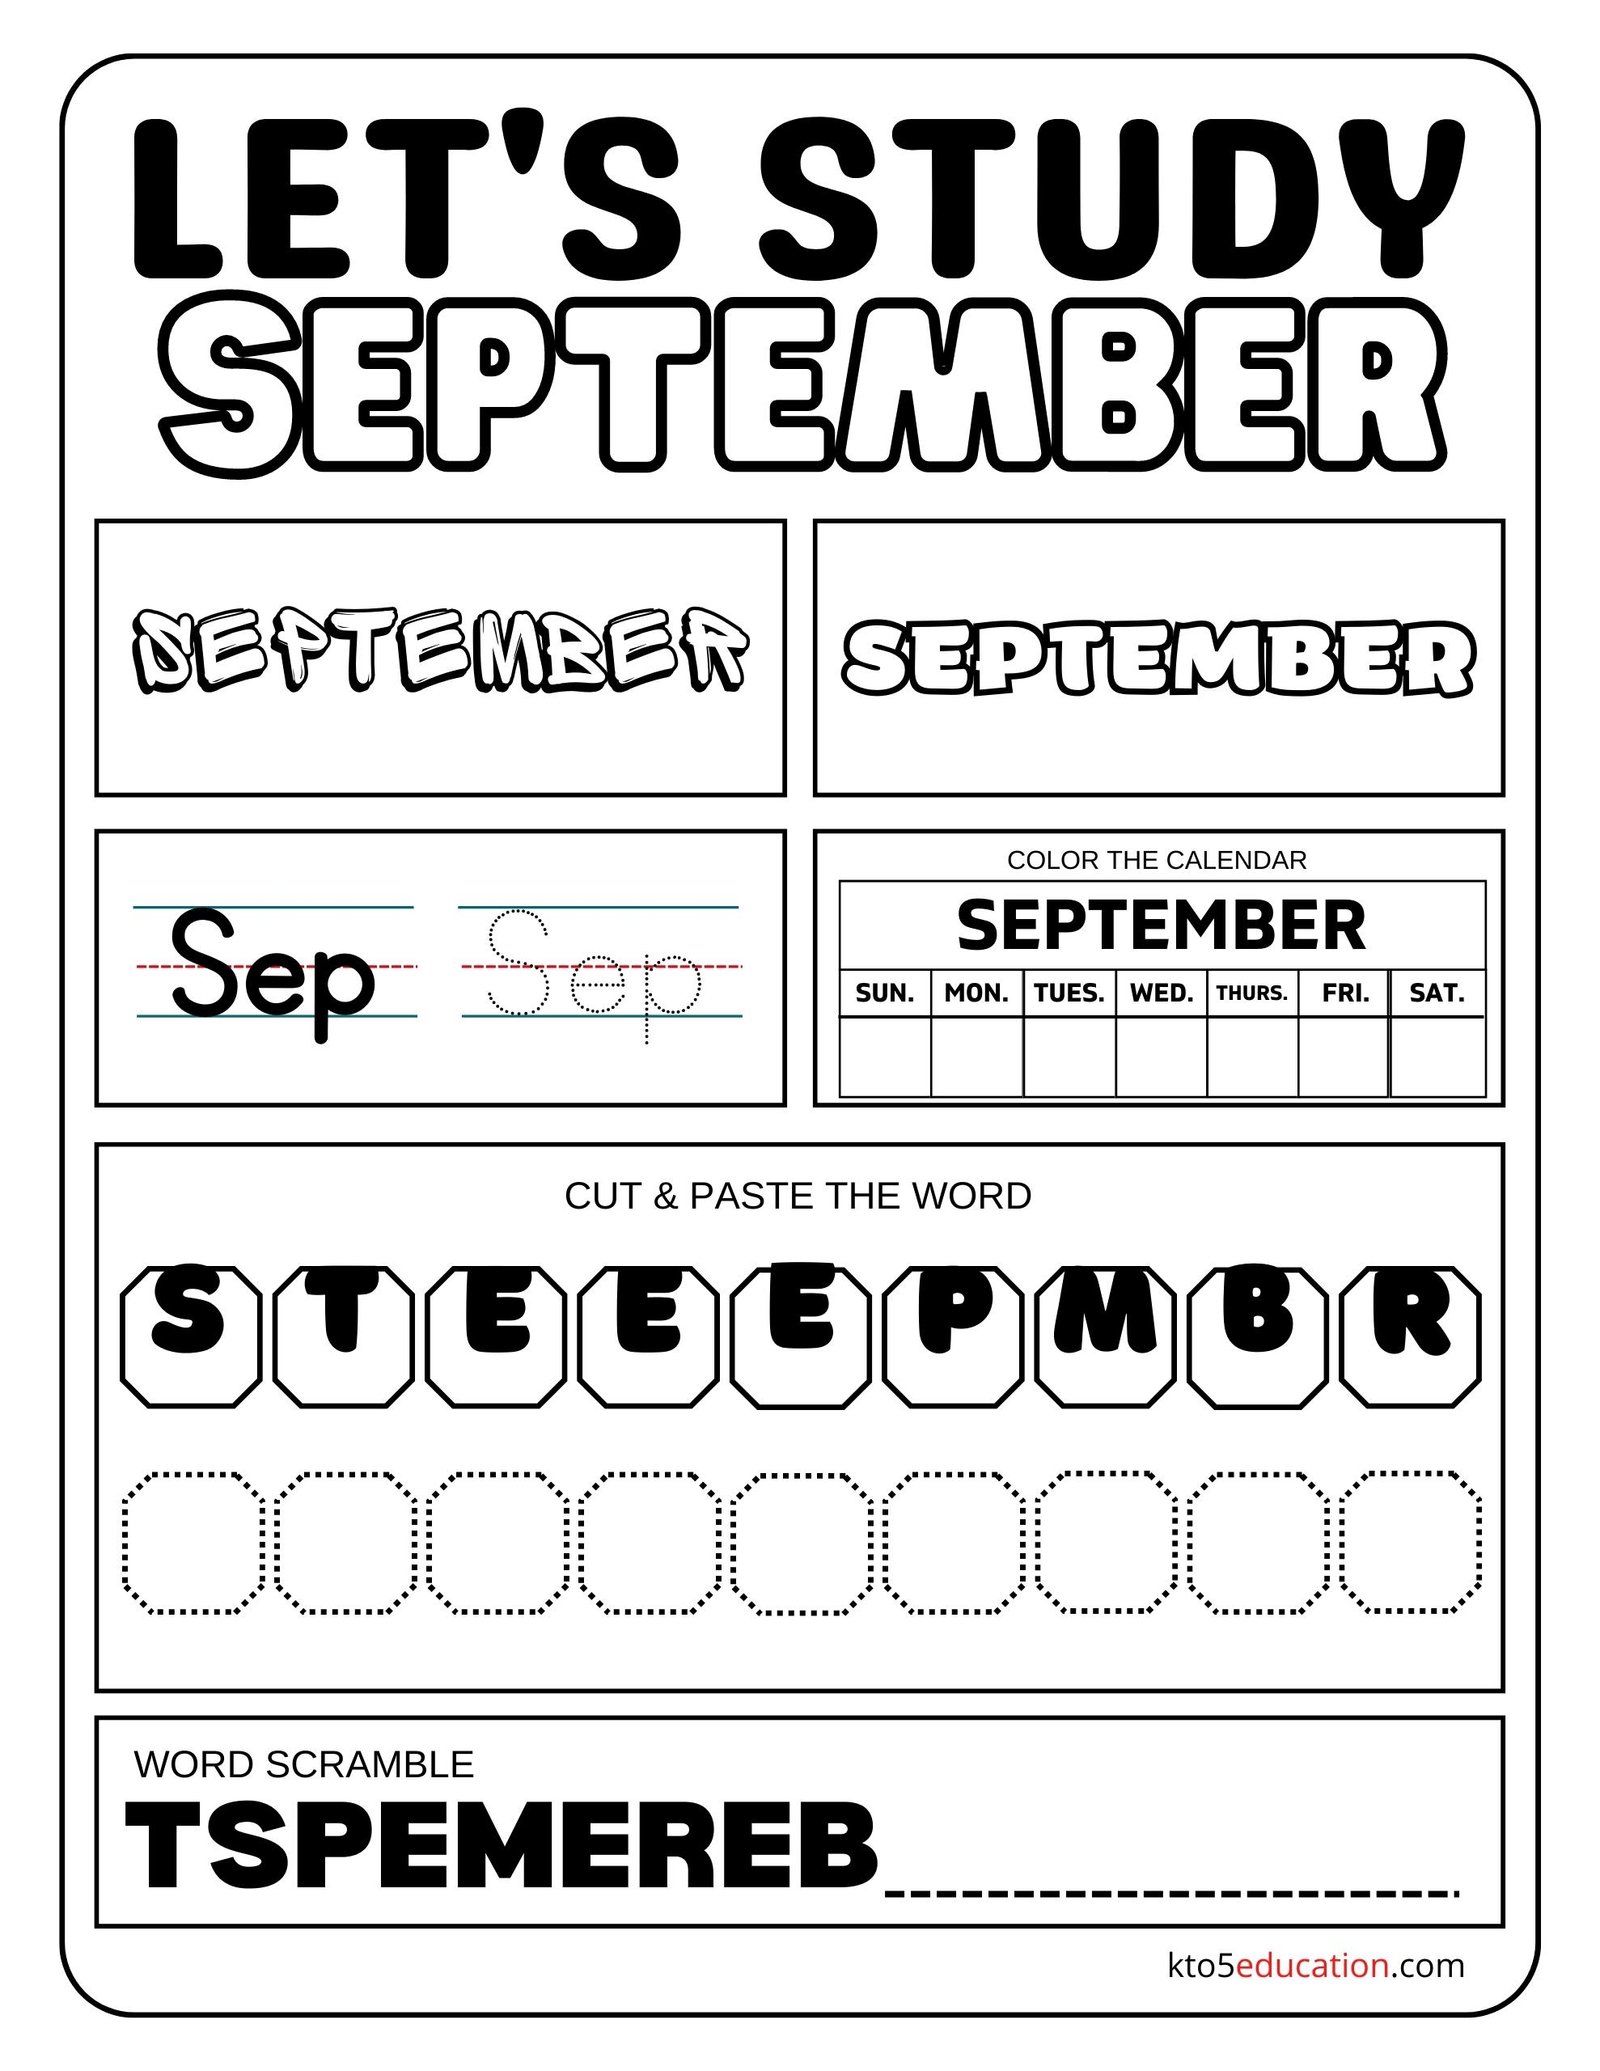 Let's Study September Worksheet